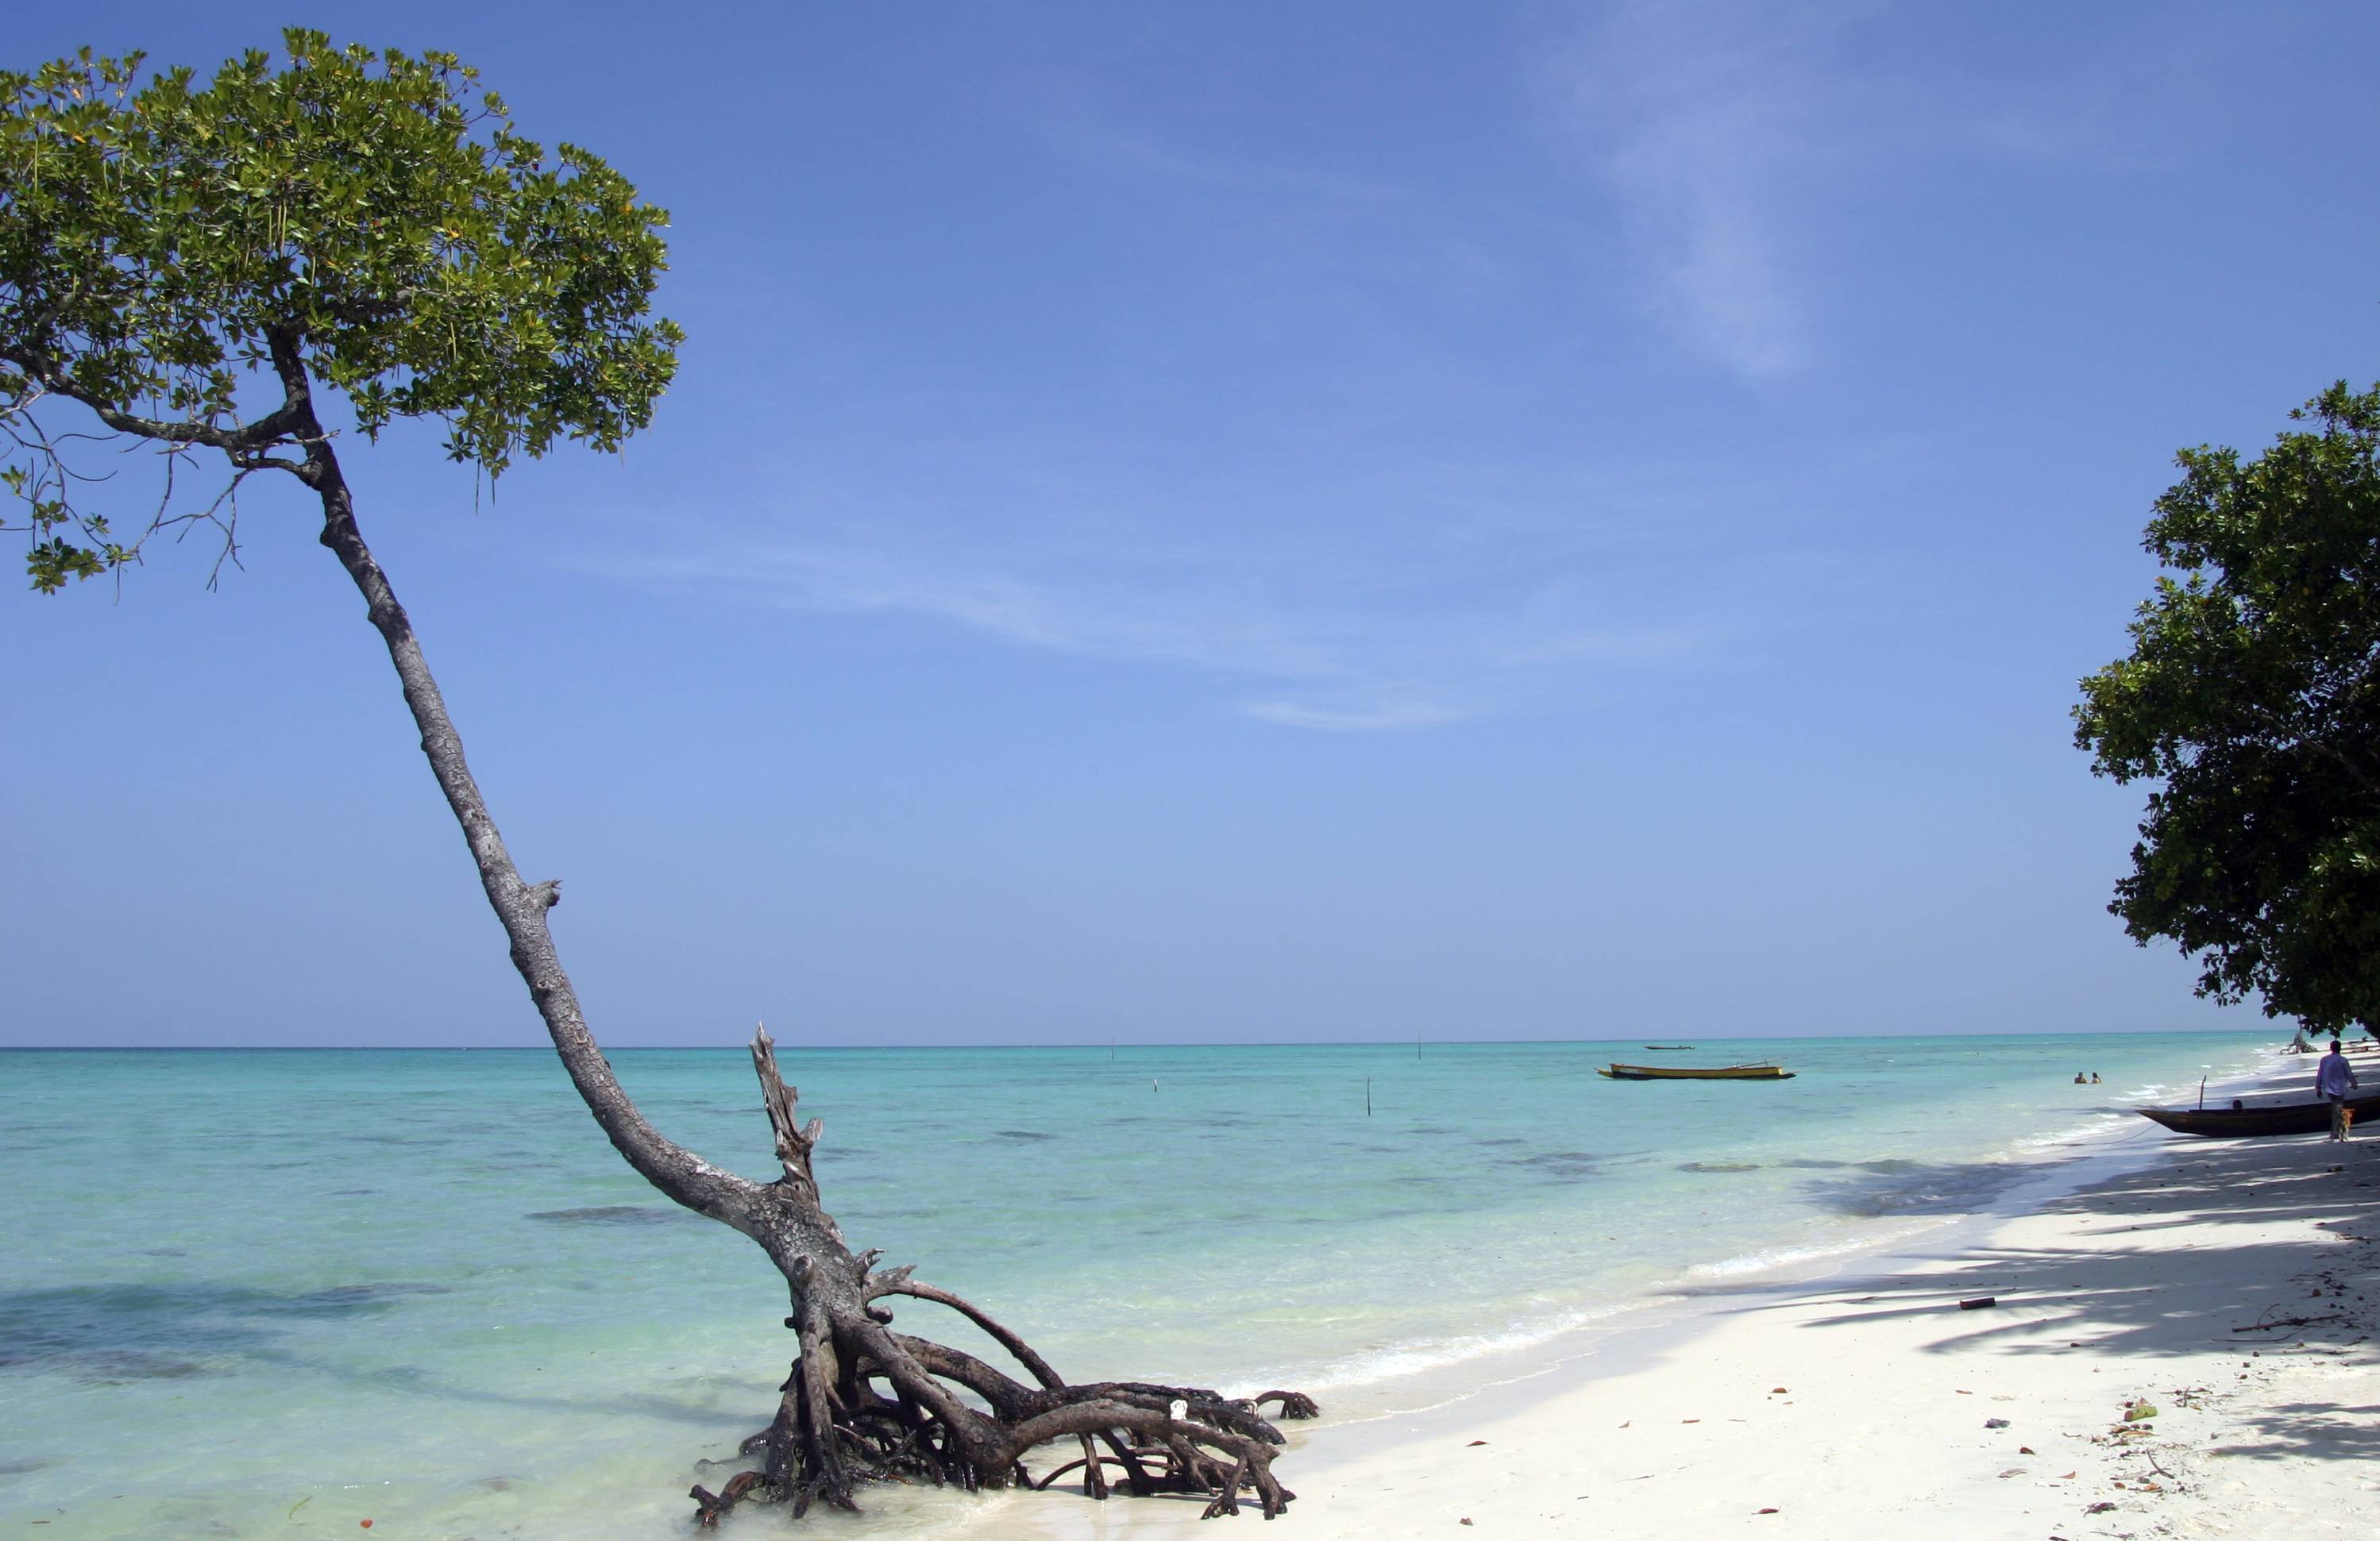 Андаманские острова – арриво